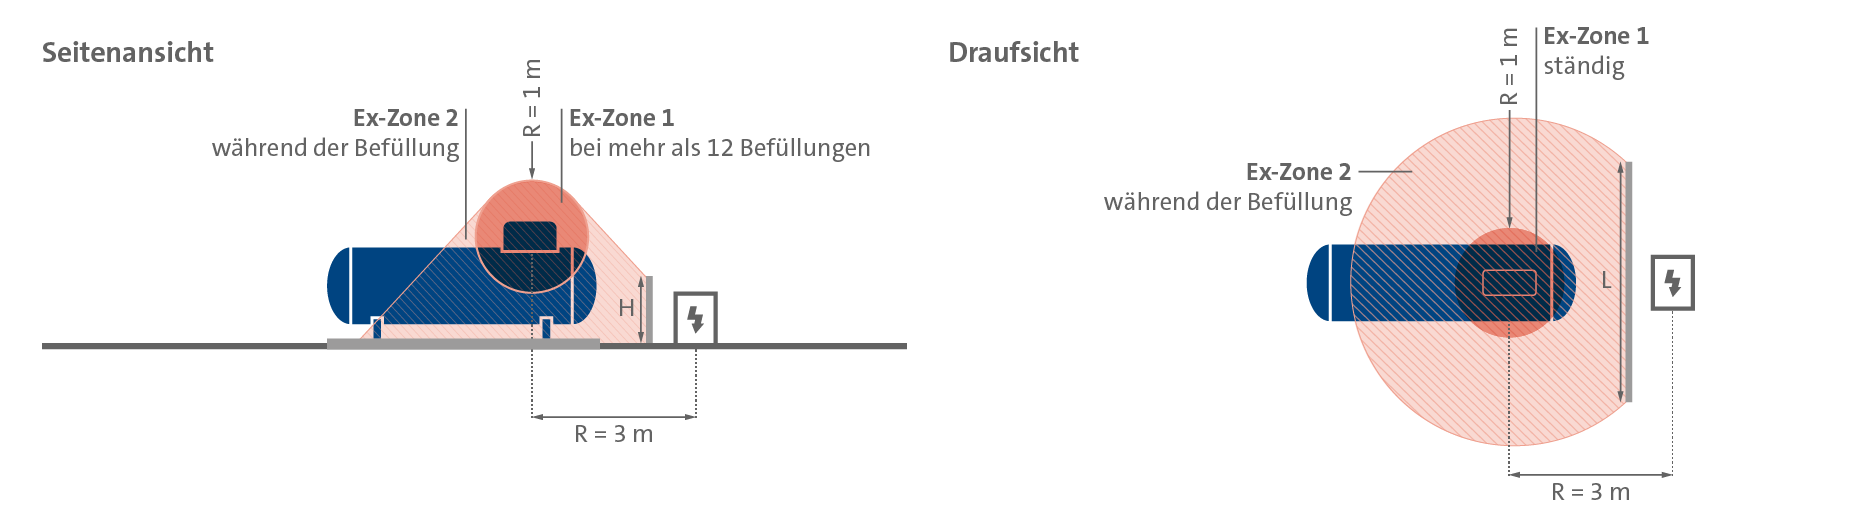 Darstellung der Ex-Zonen eines oberirdischen Flüssiggastanks in der Nähe von elektrischen Betriebsmitteln (Seitenansicht und Draufsicht).